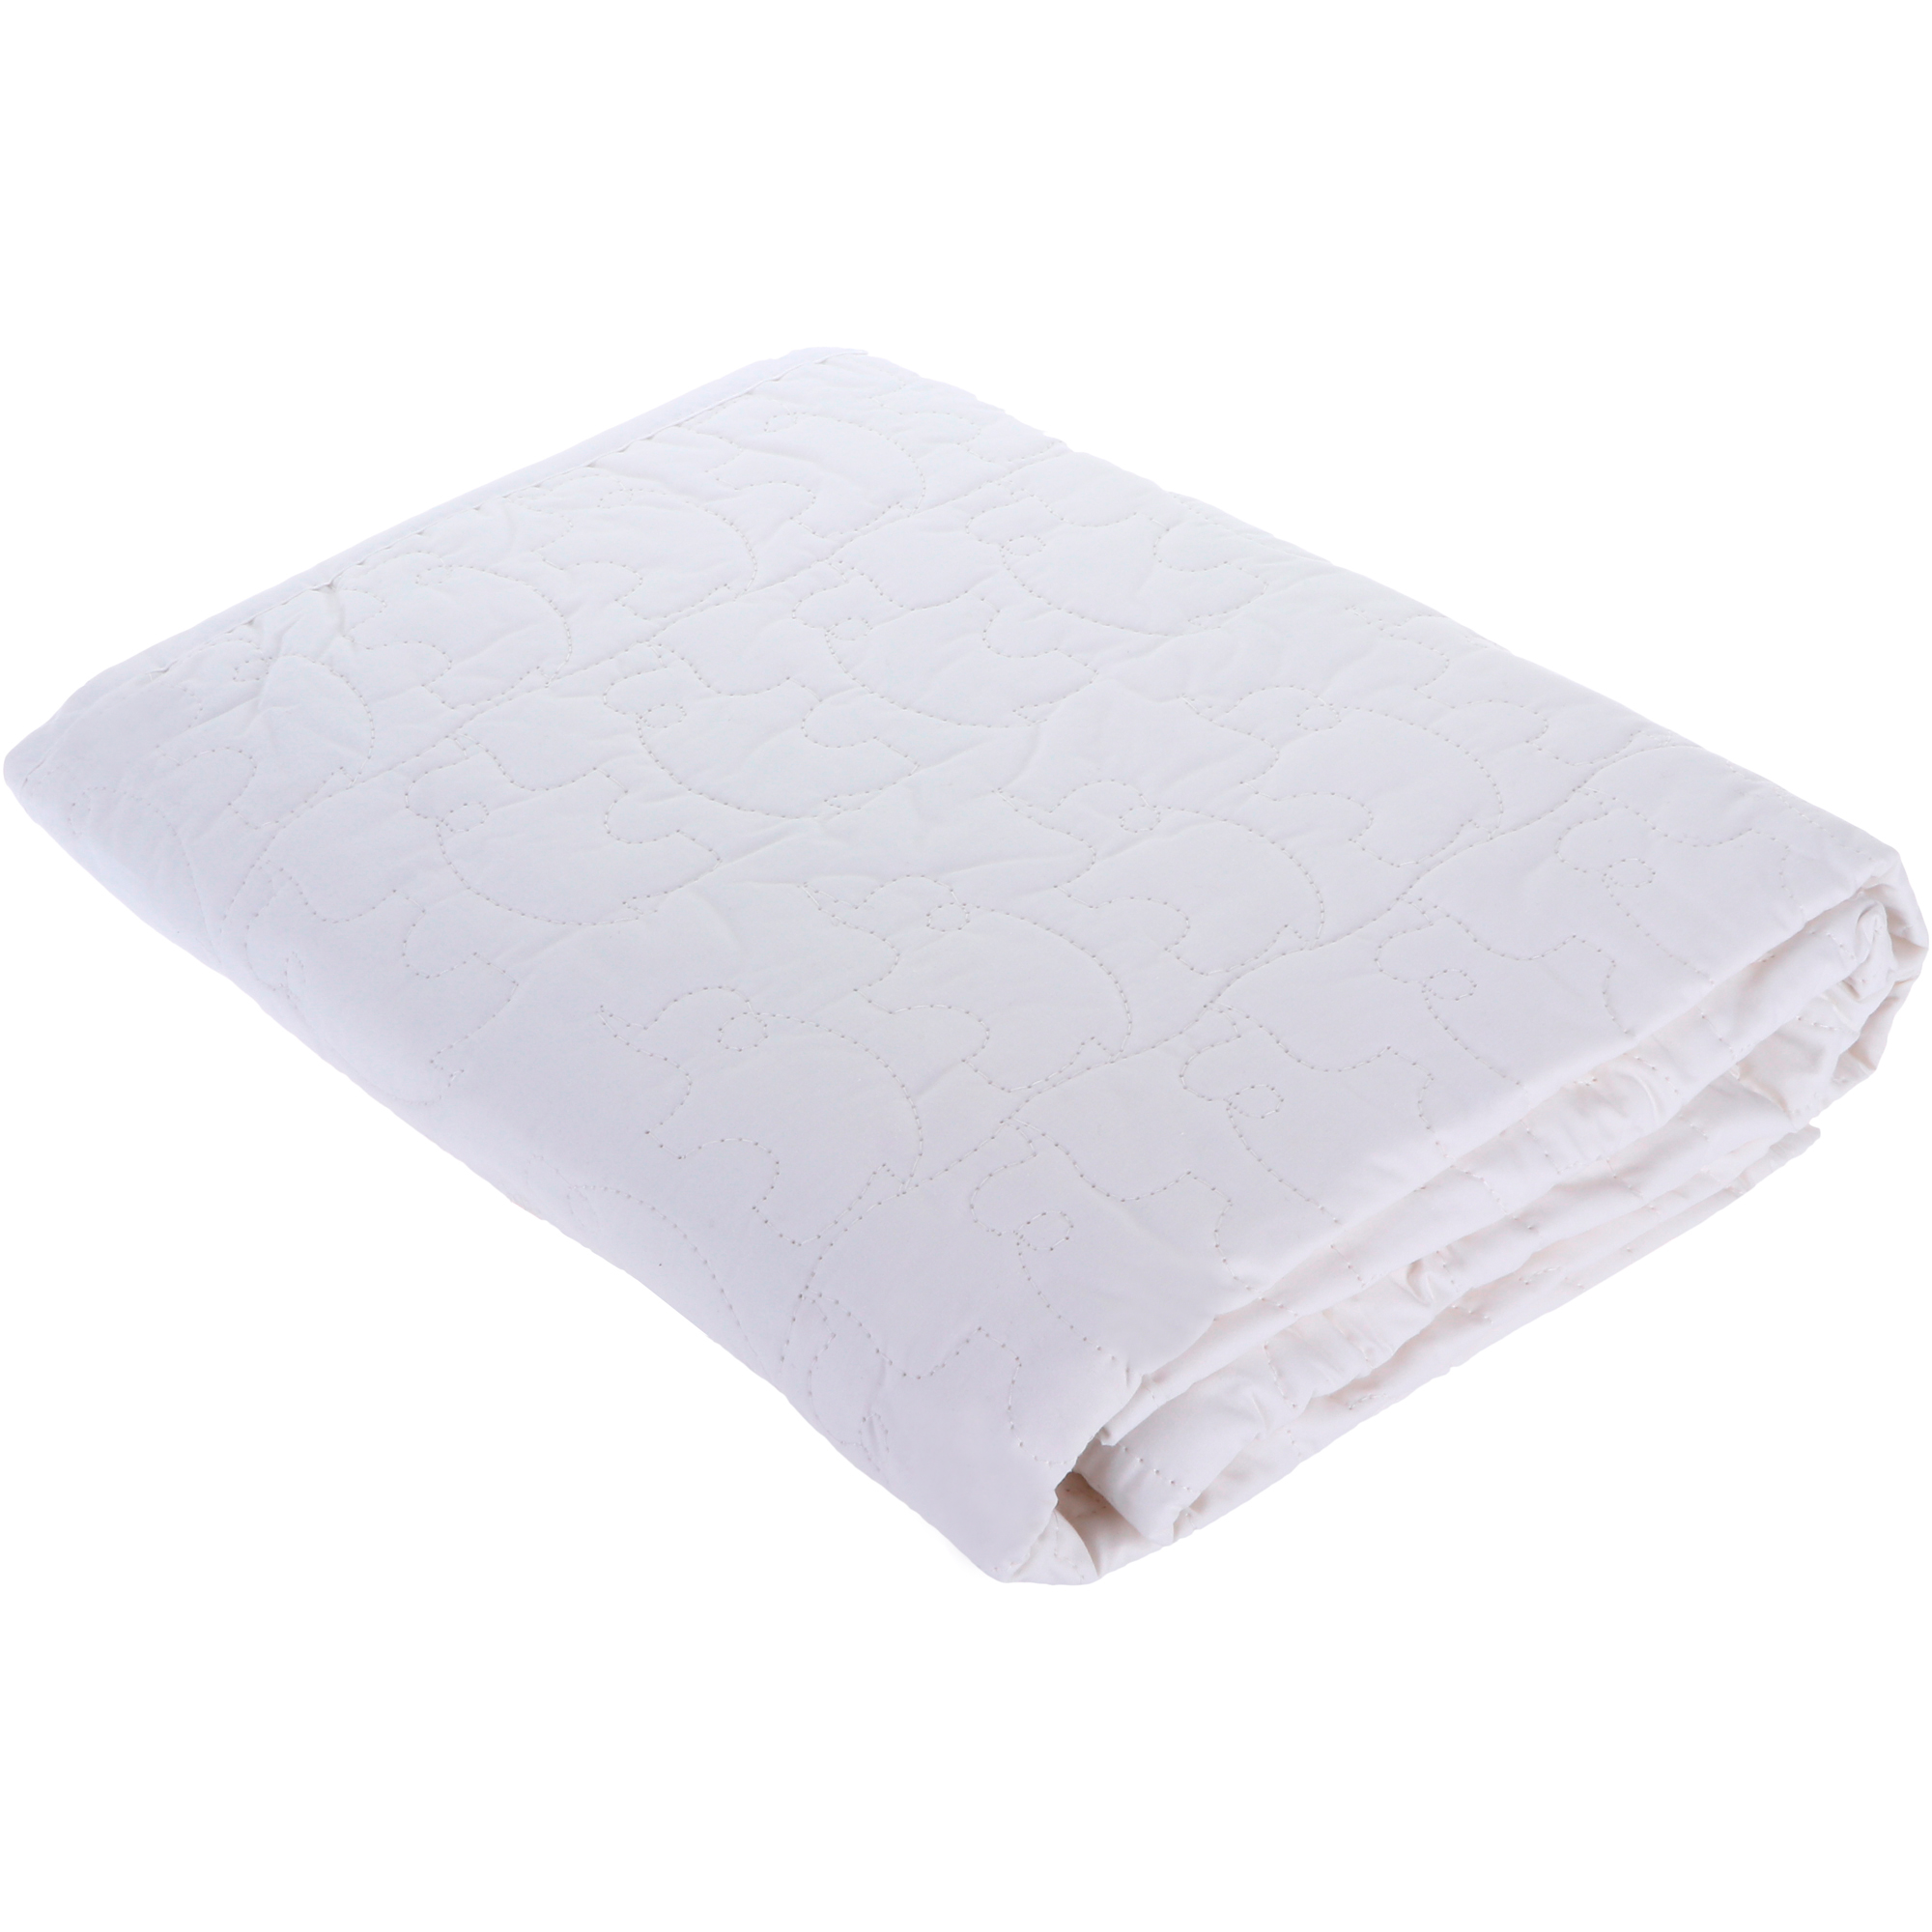 фото Детское одеяло вонне-траум baby comfort белое 120х150 см wonne traum